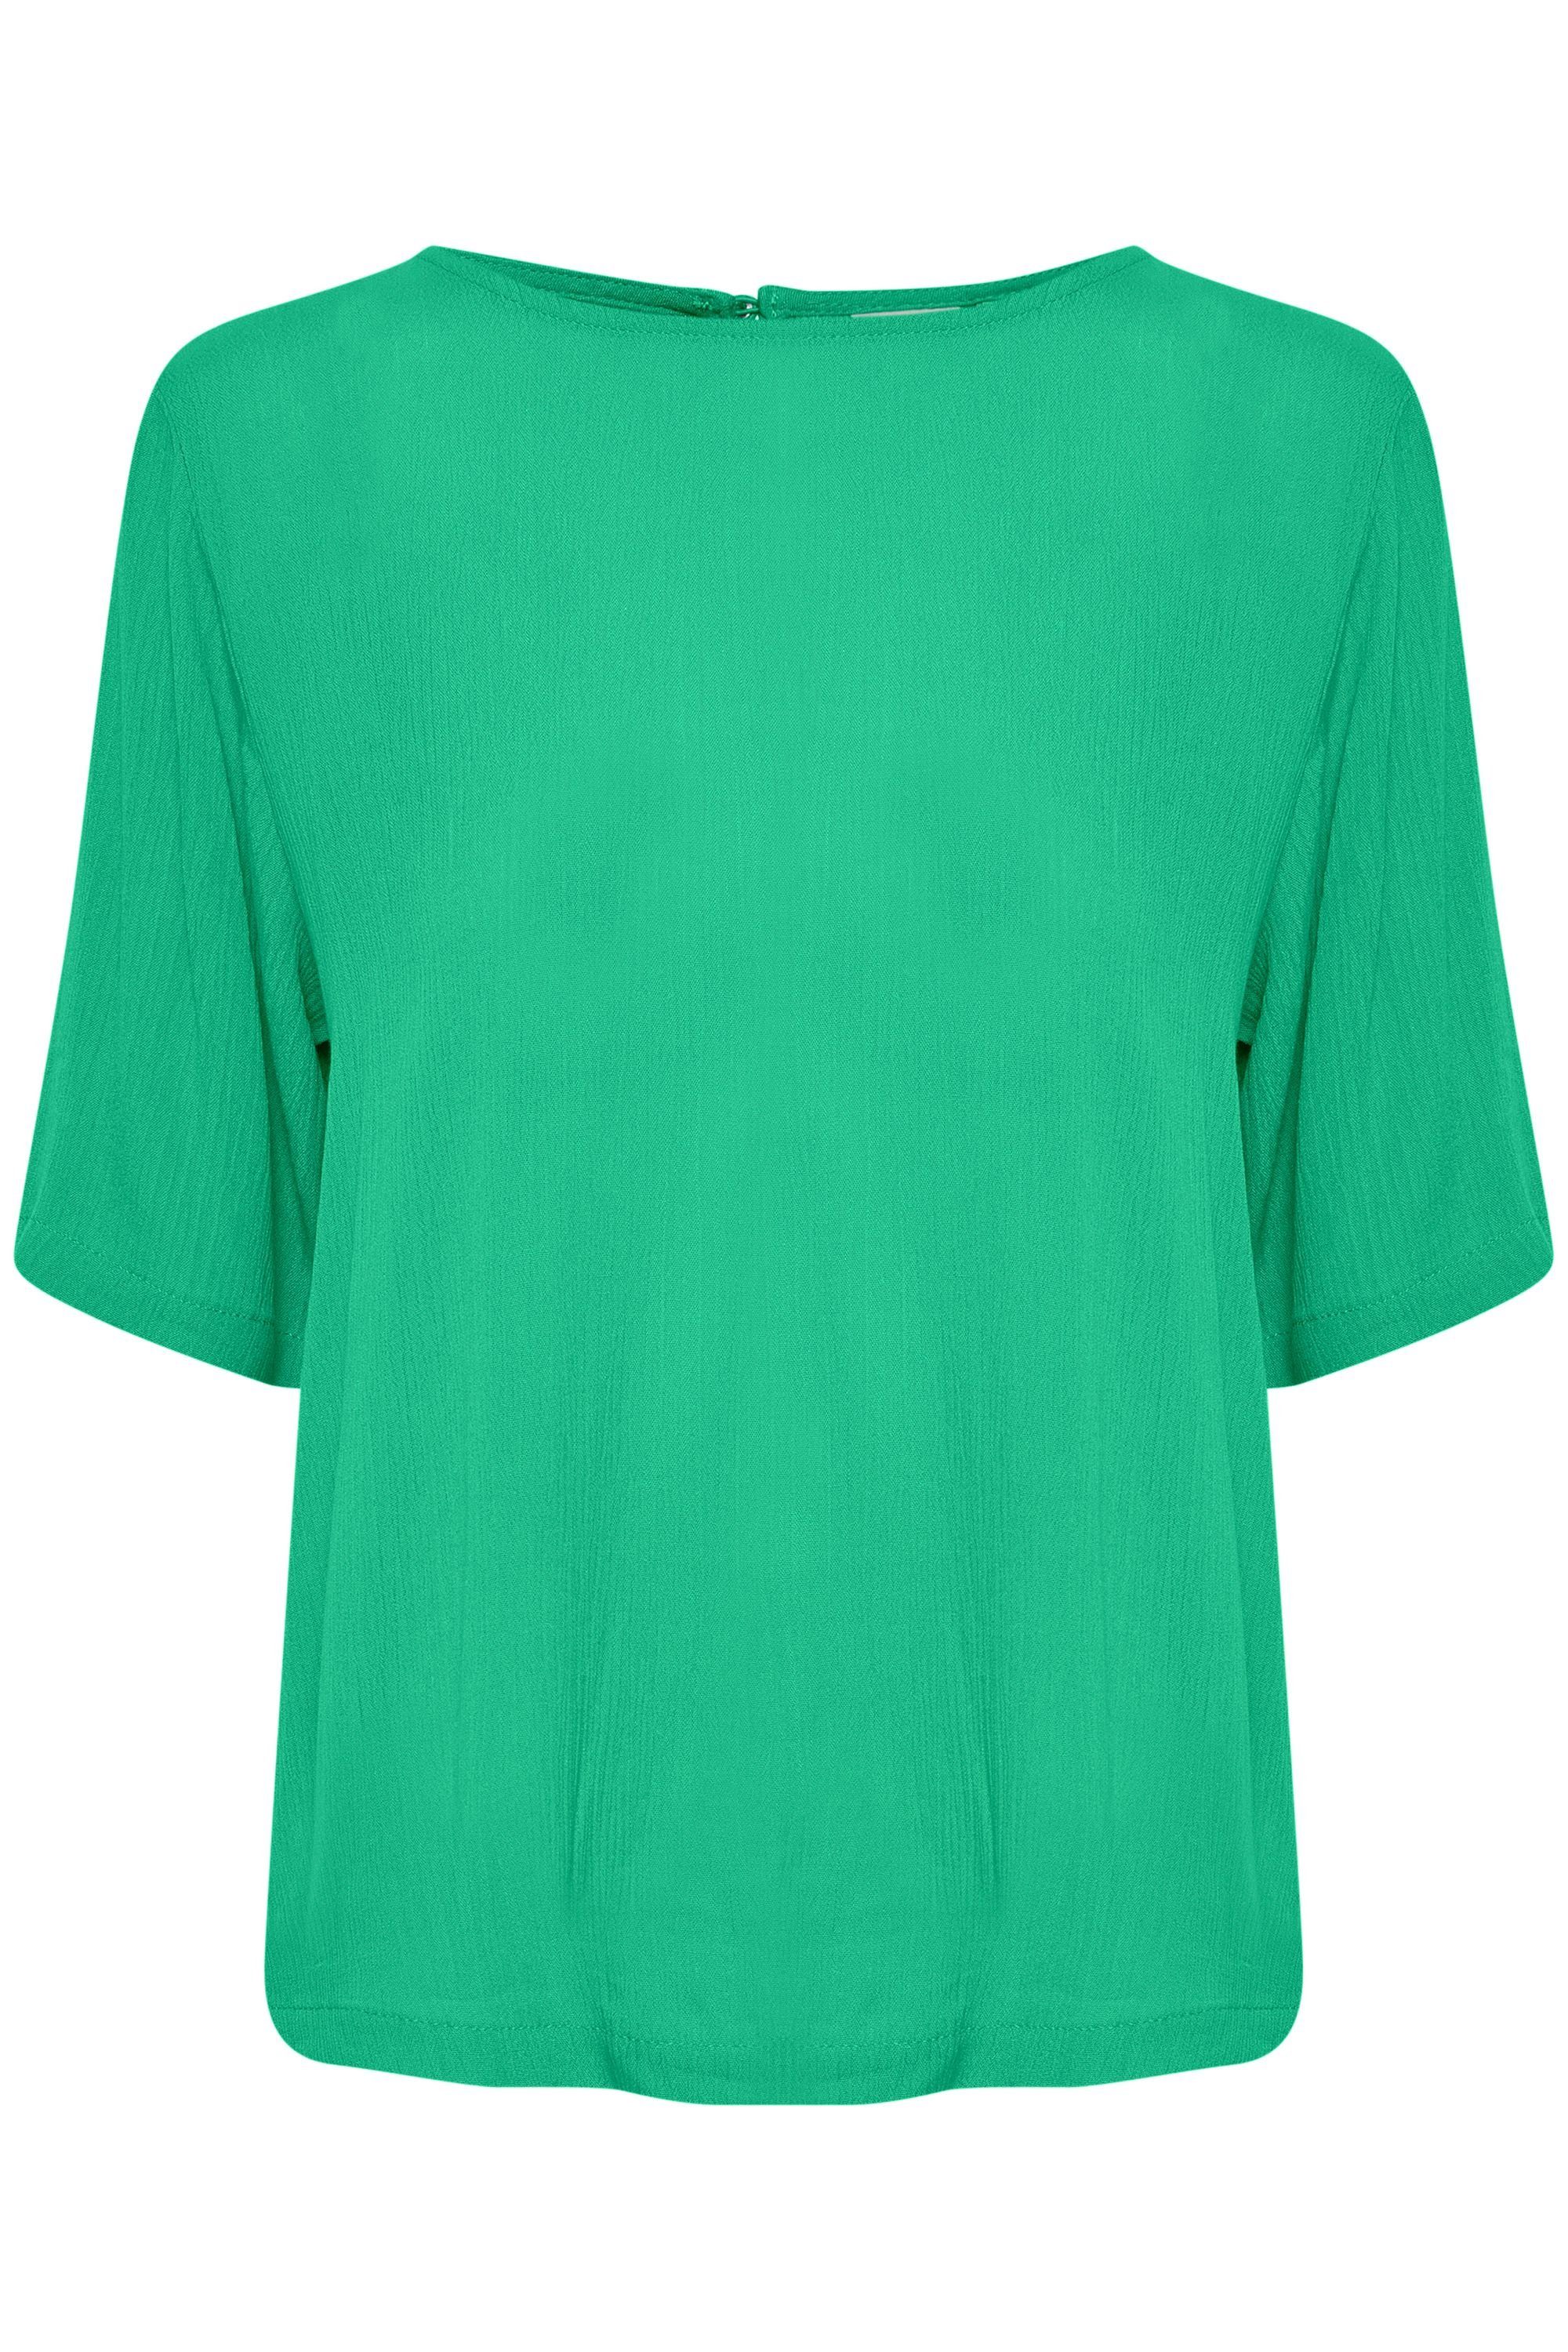 Shirtbluse Green Holly (165932) SO IHMARRAKECH - 20111458 SS3 Ichi